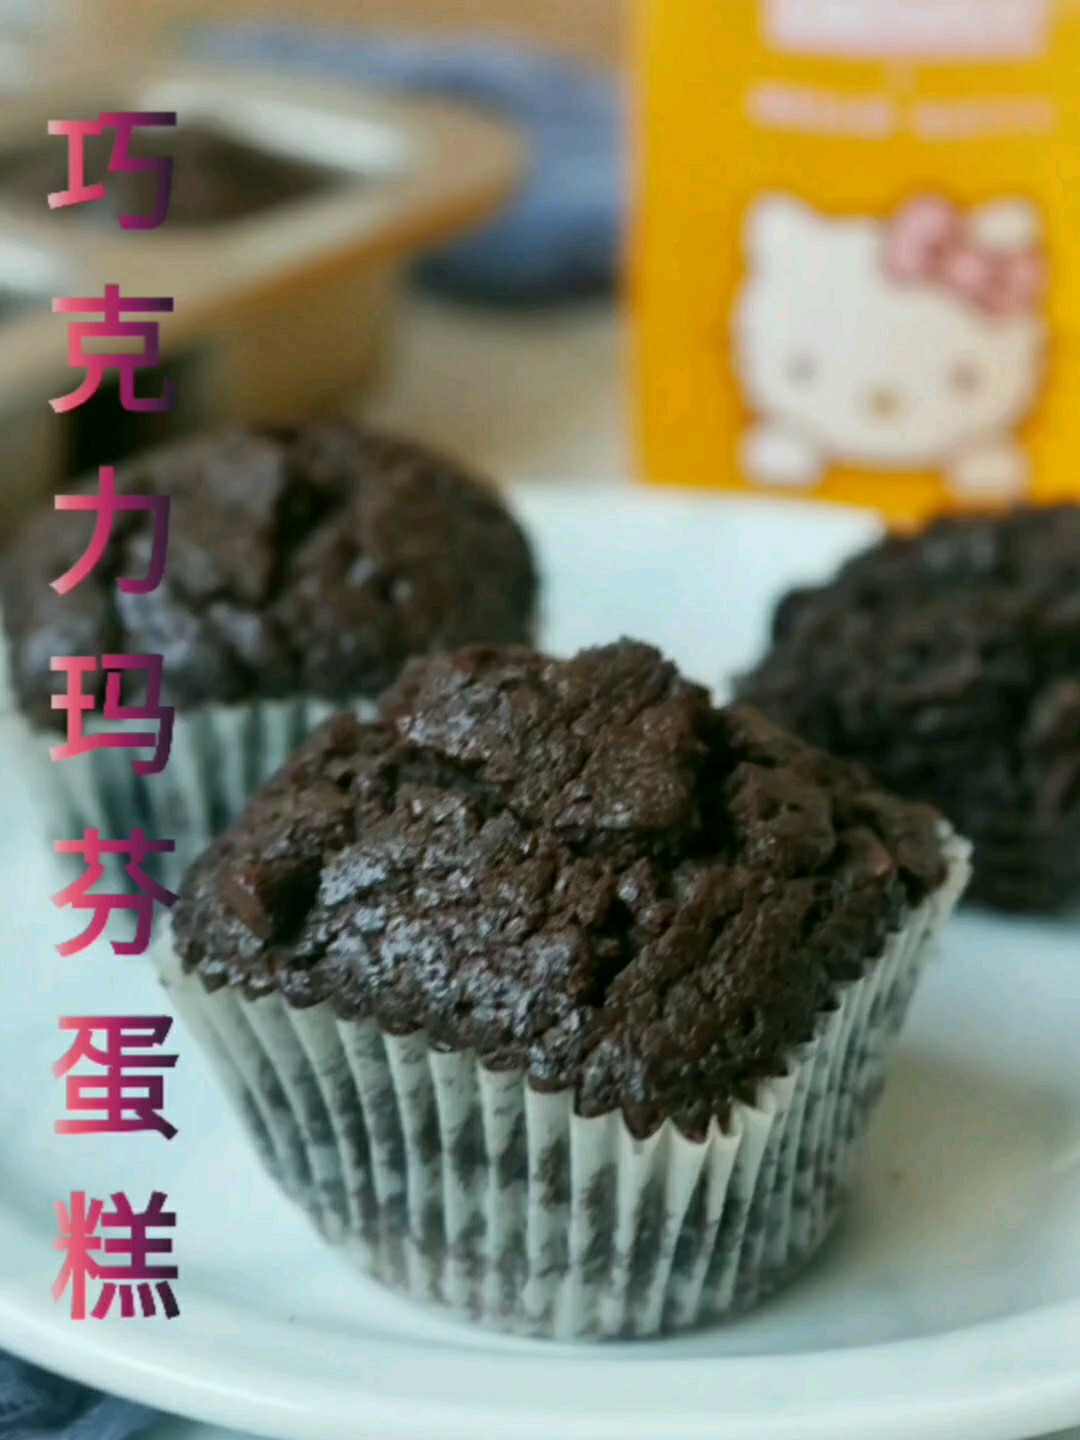 Chocolate Muffin Cake recipe